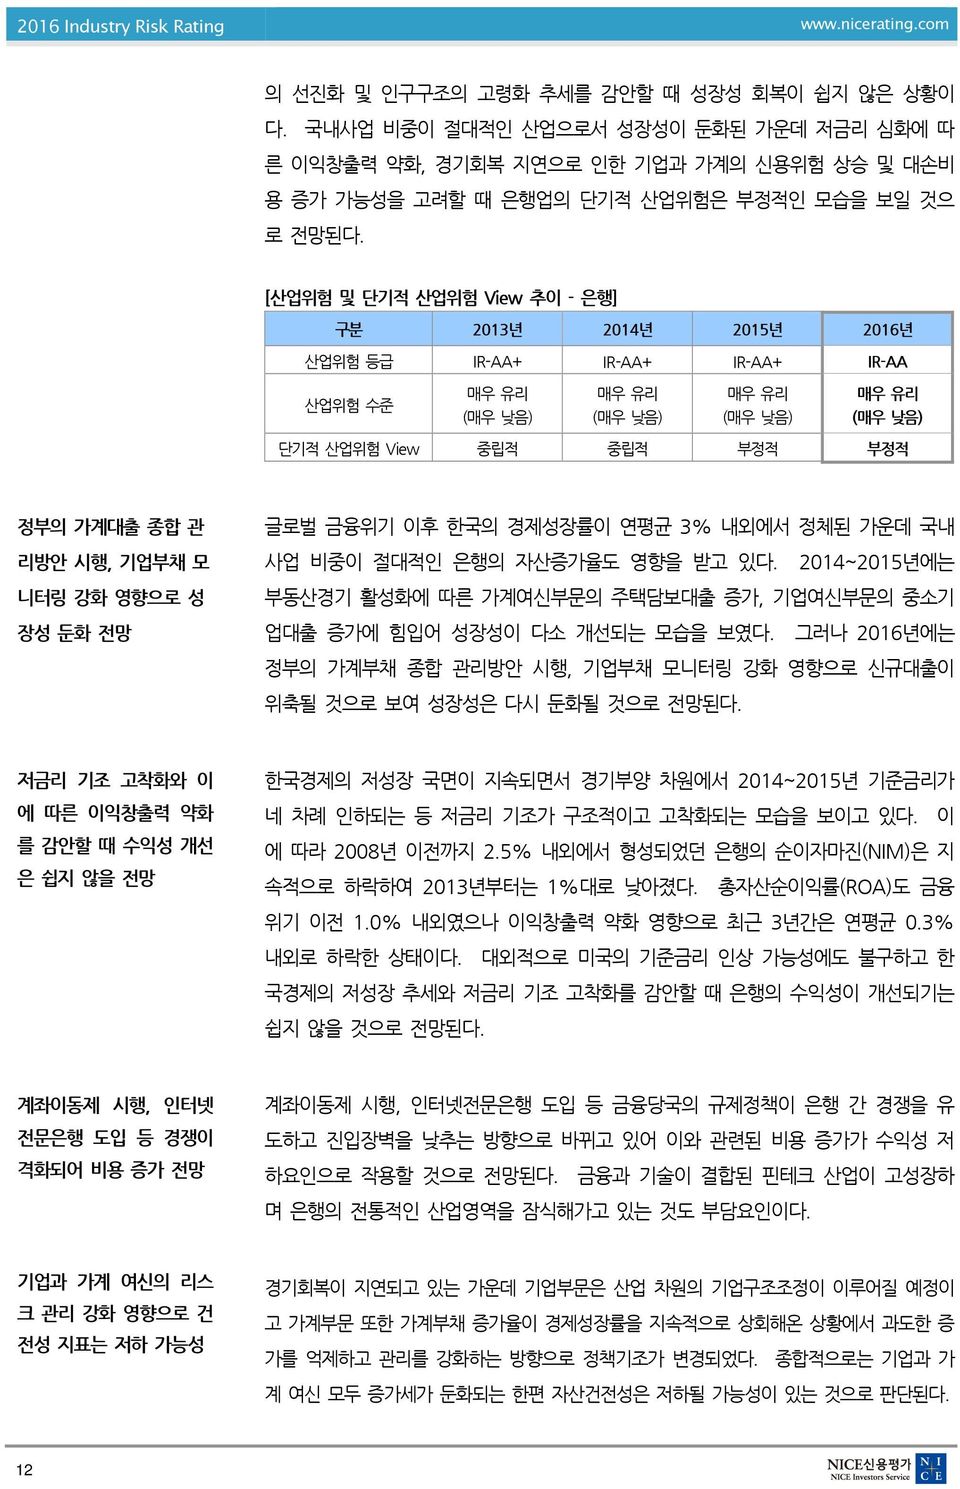 관 글로벌 금융위기 이후 한국의 경제성장률이 연평균 3% 내외에서 정체된 가운데 국내 리방안 시행, 기업부채 모 사업 비중이 절대적인 은행의 자산증가율도 영향을 받고 있다.